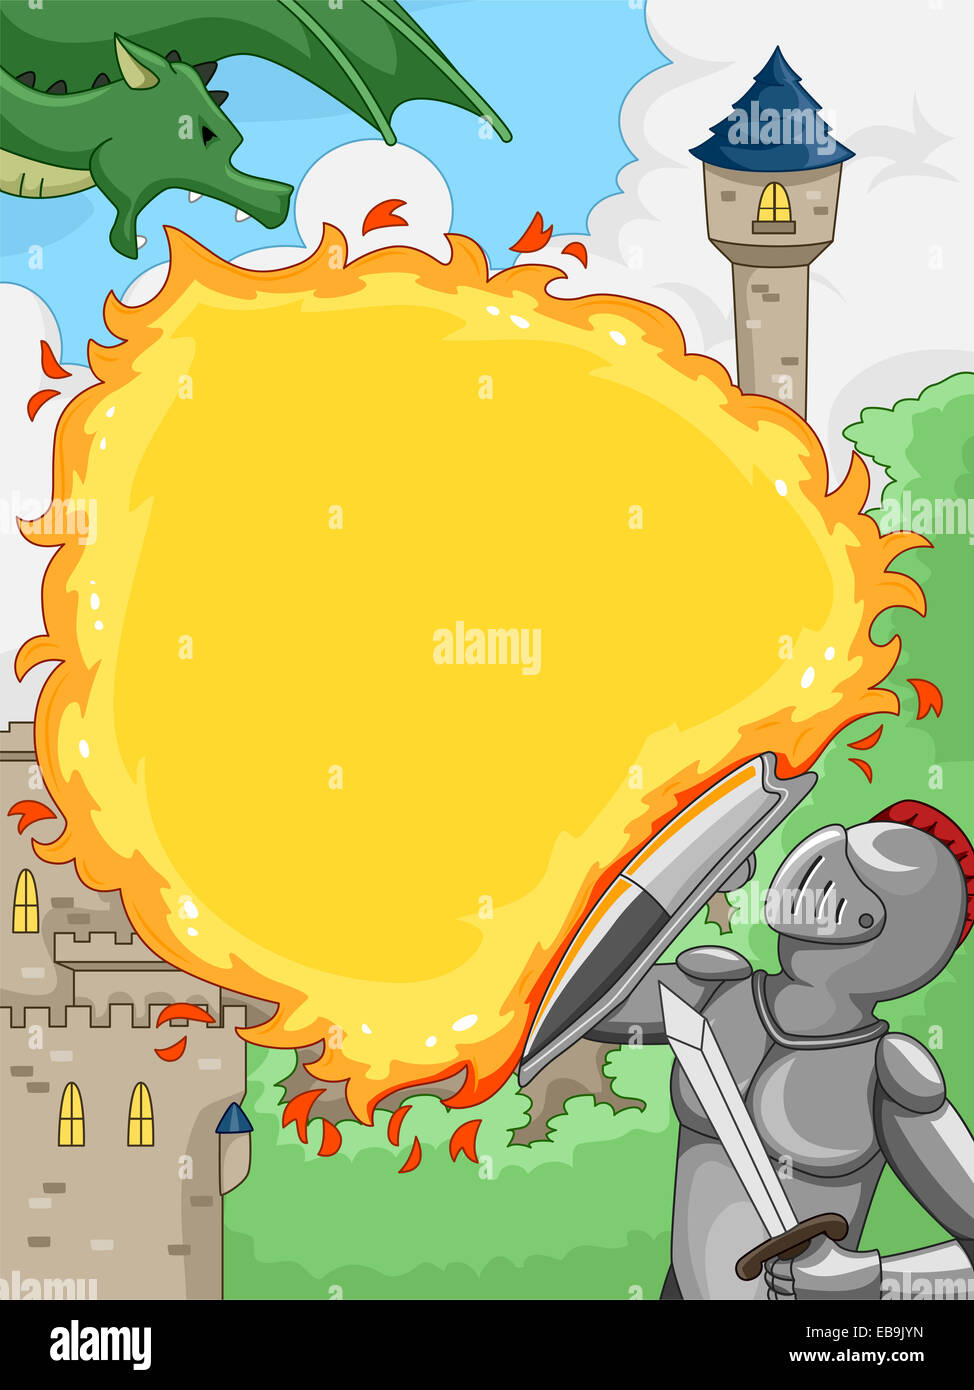 L'illustration comprend un blindage lui-même contre un chevalier du dragon attaque Fiery Banque D'Images